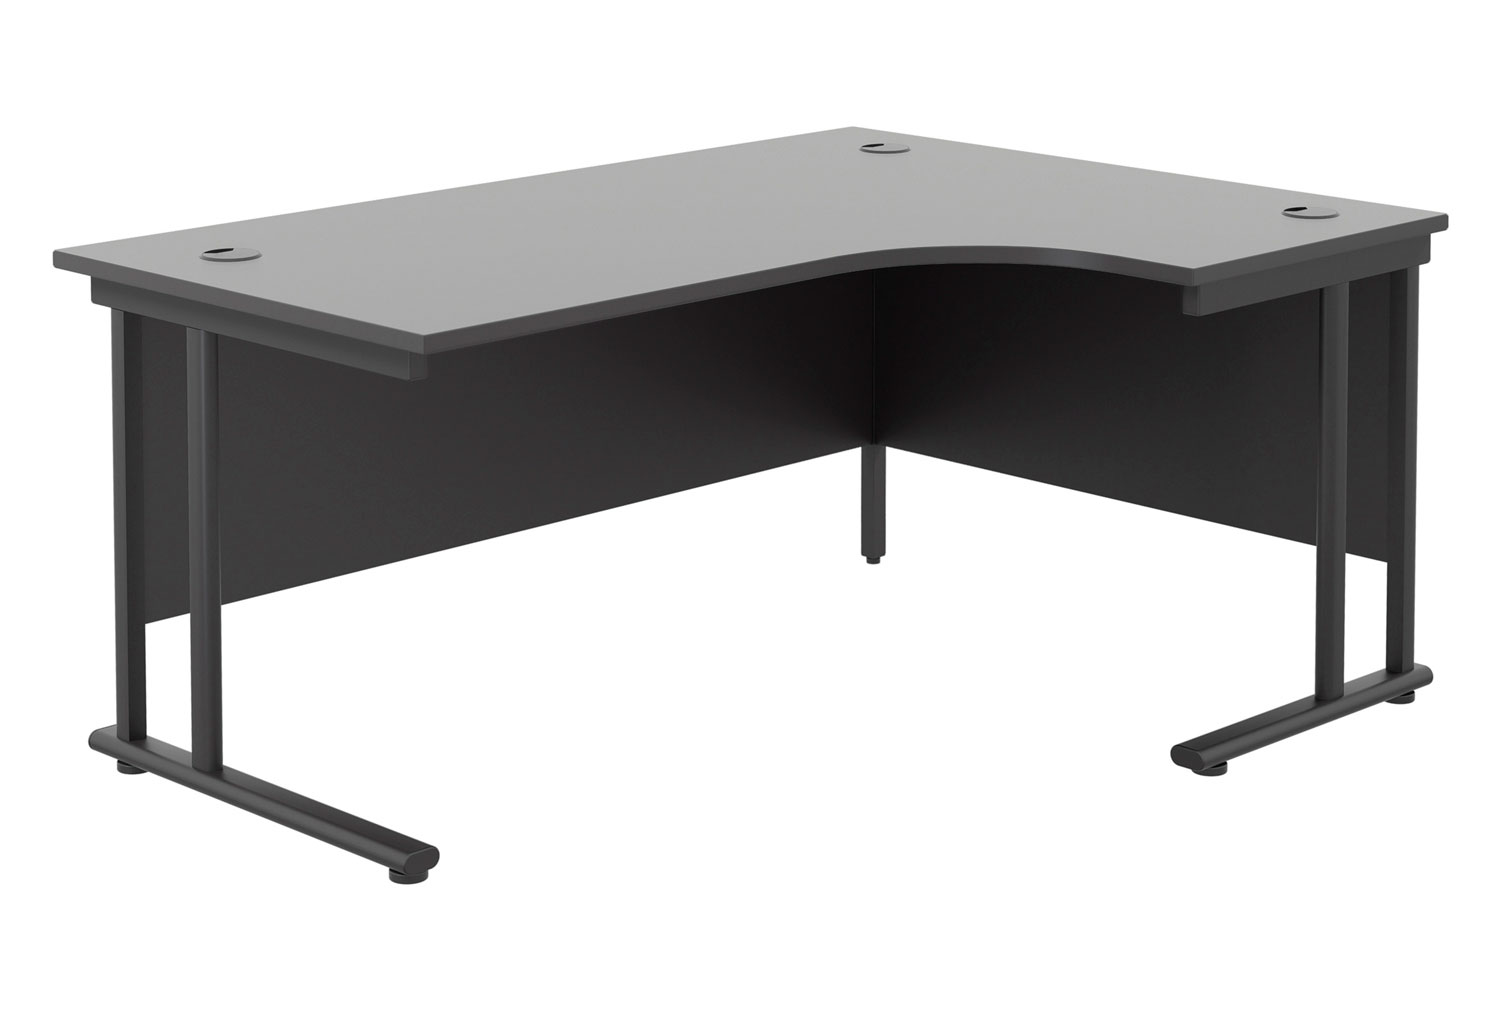 All Black Double C-Leg Right Hand Ergonomic Office Desk, 180wx120/80dx73h (cm), Fully Installed